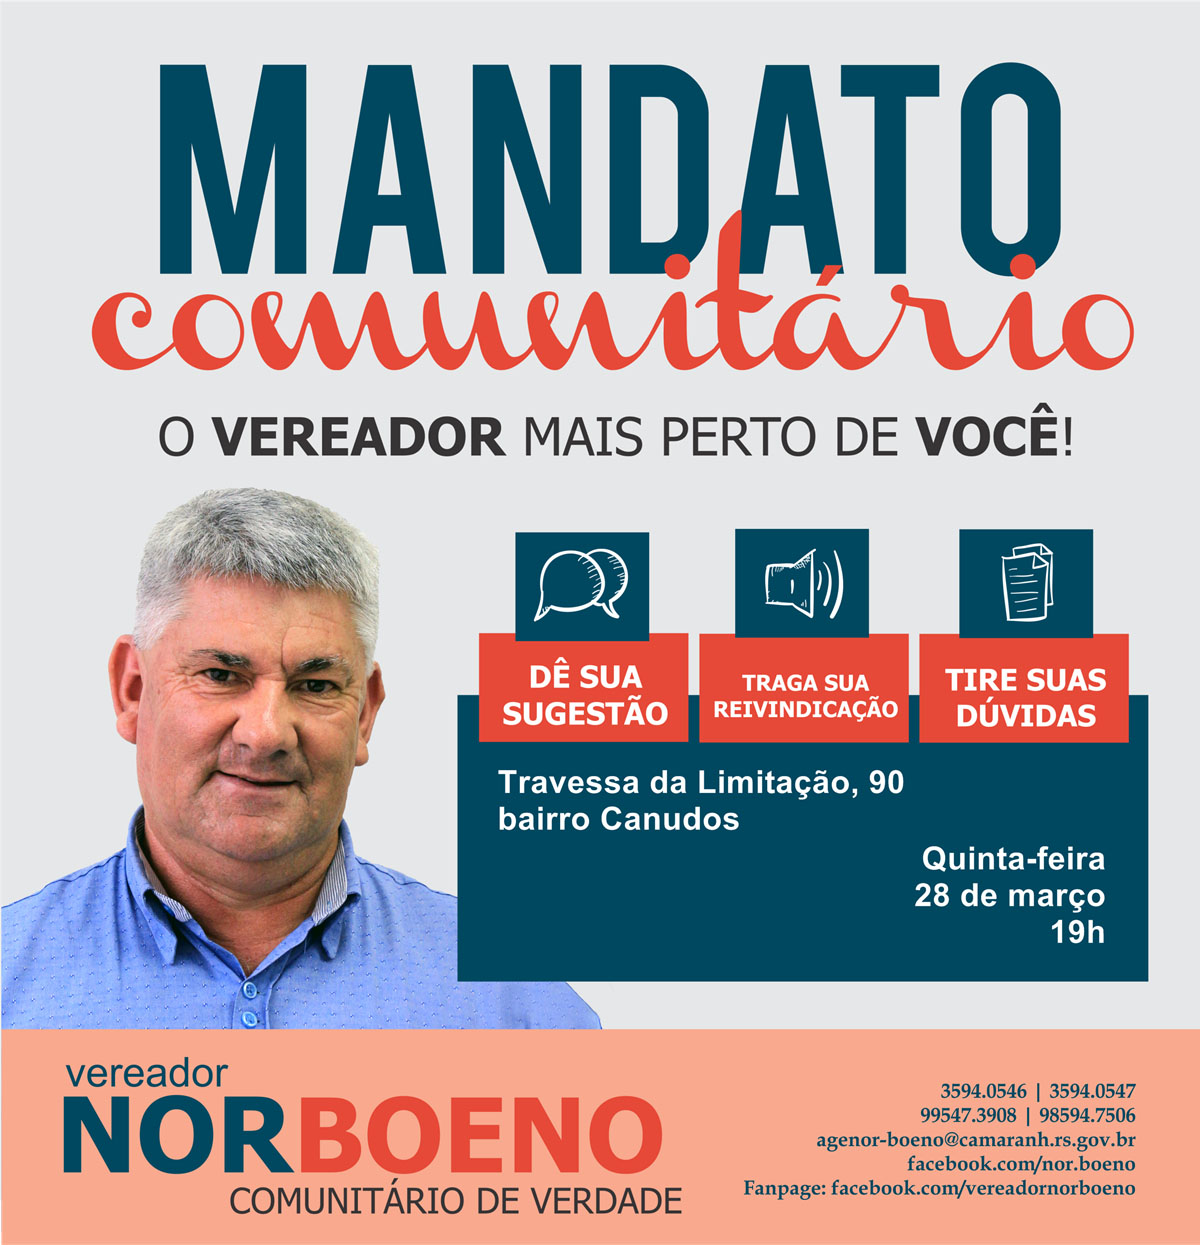 27/03/2019 - Vereador Nor Boeno realiza Mandato Comunitário nesta quinta-feira 